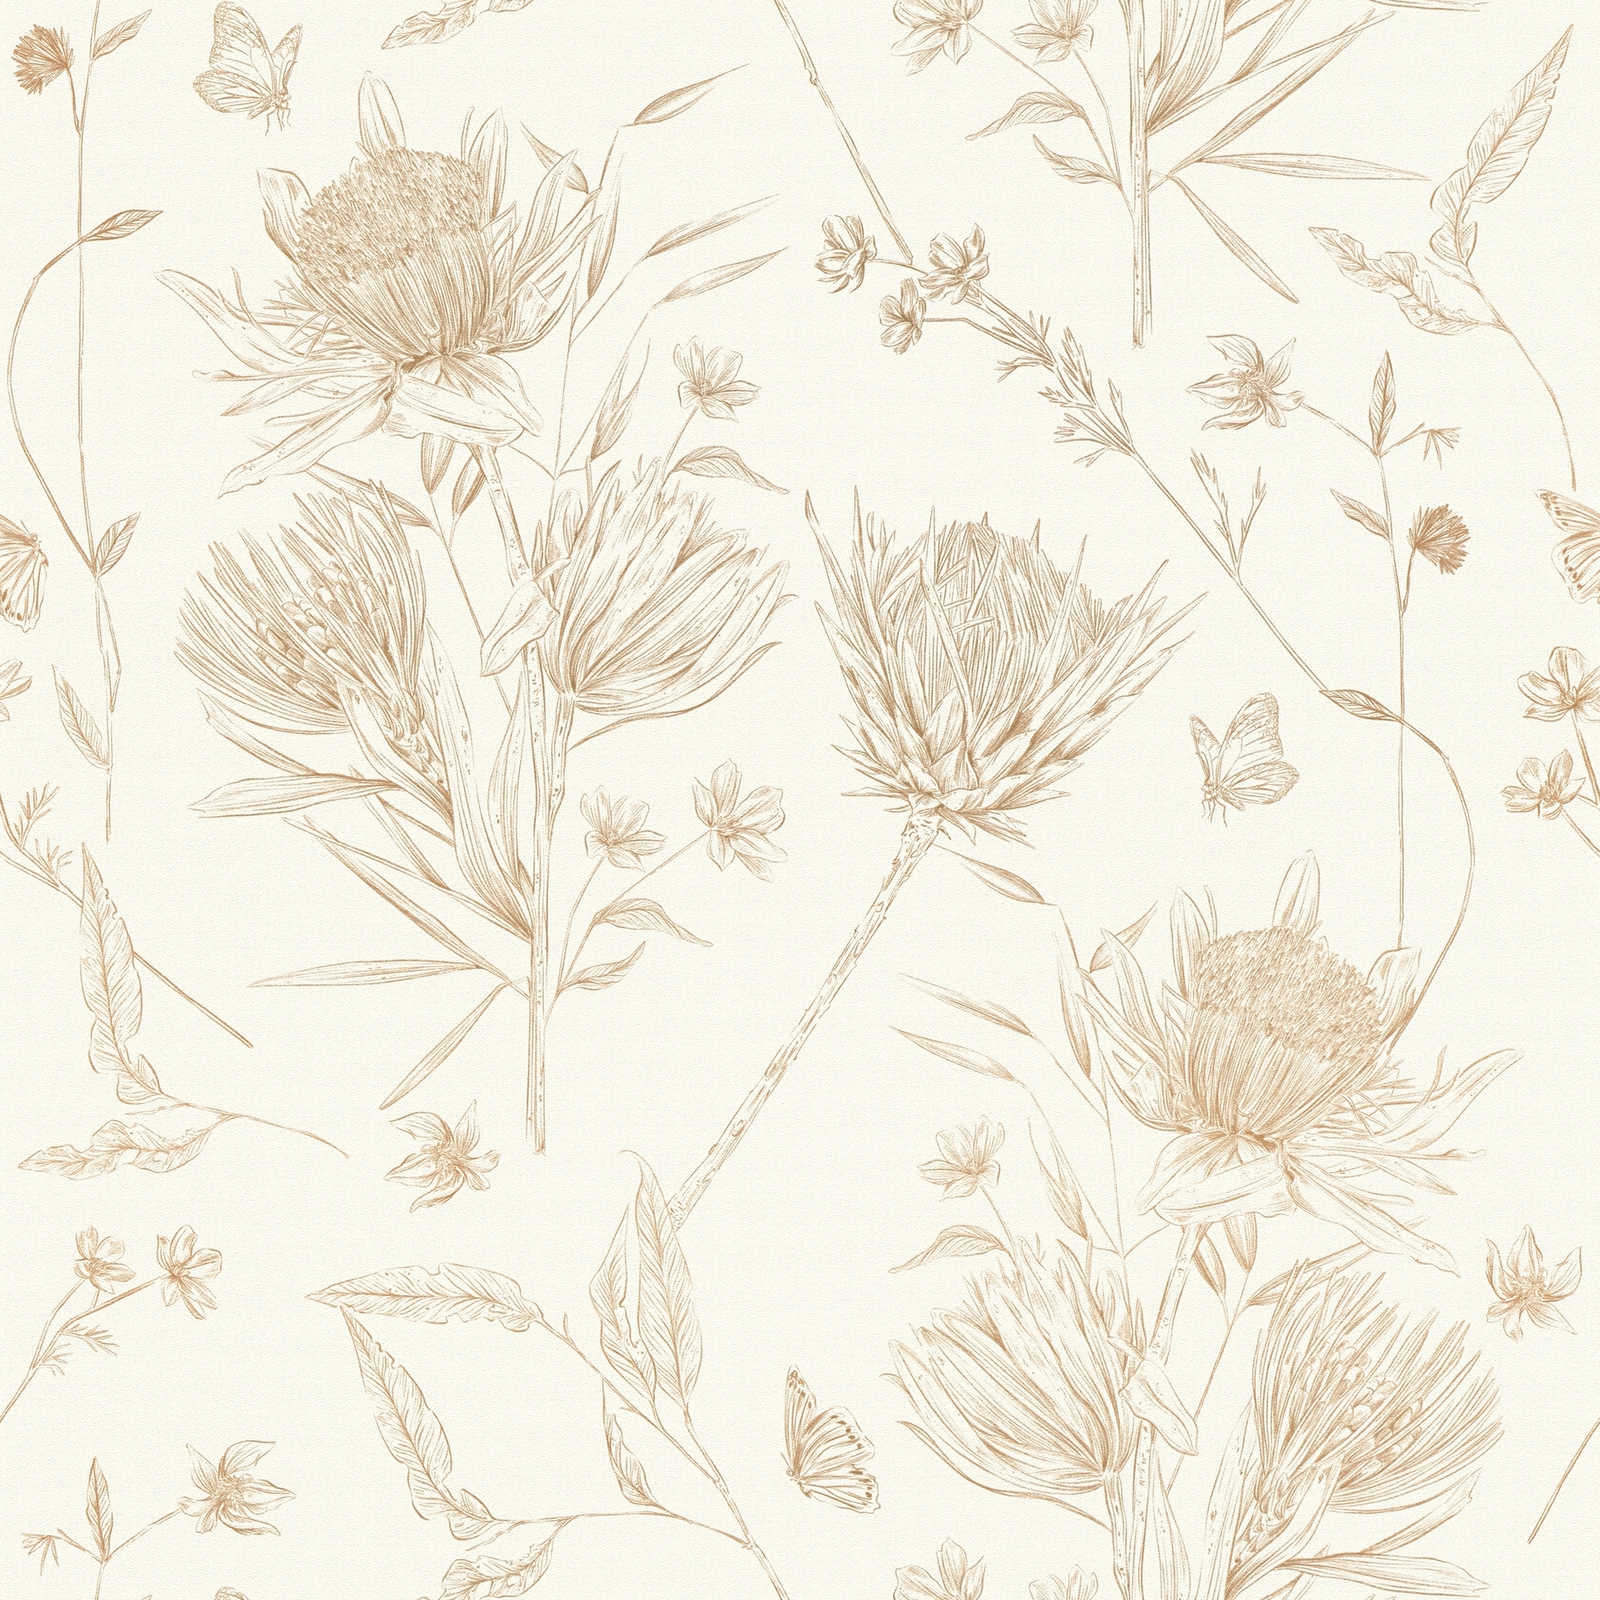             Florale Tapete mit Blumen & Schmetterlingen strukturiert matt – Weiß, Braun, Beige
        